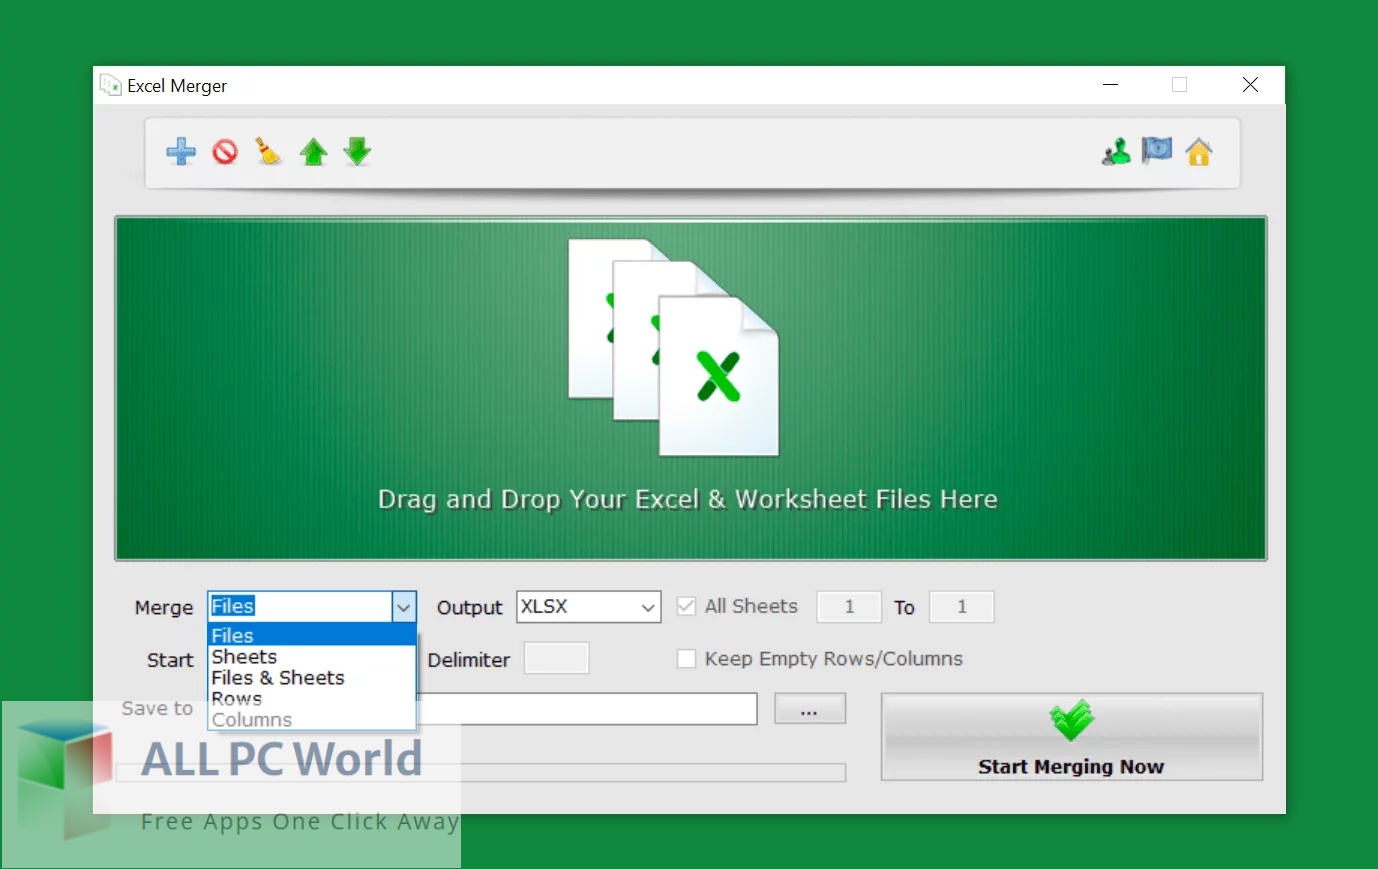 Excel Merger Pro Free Setup Download